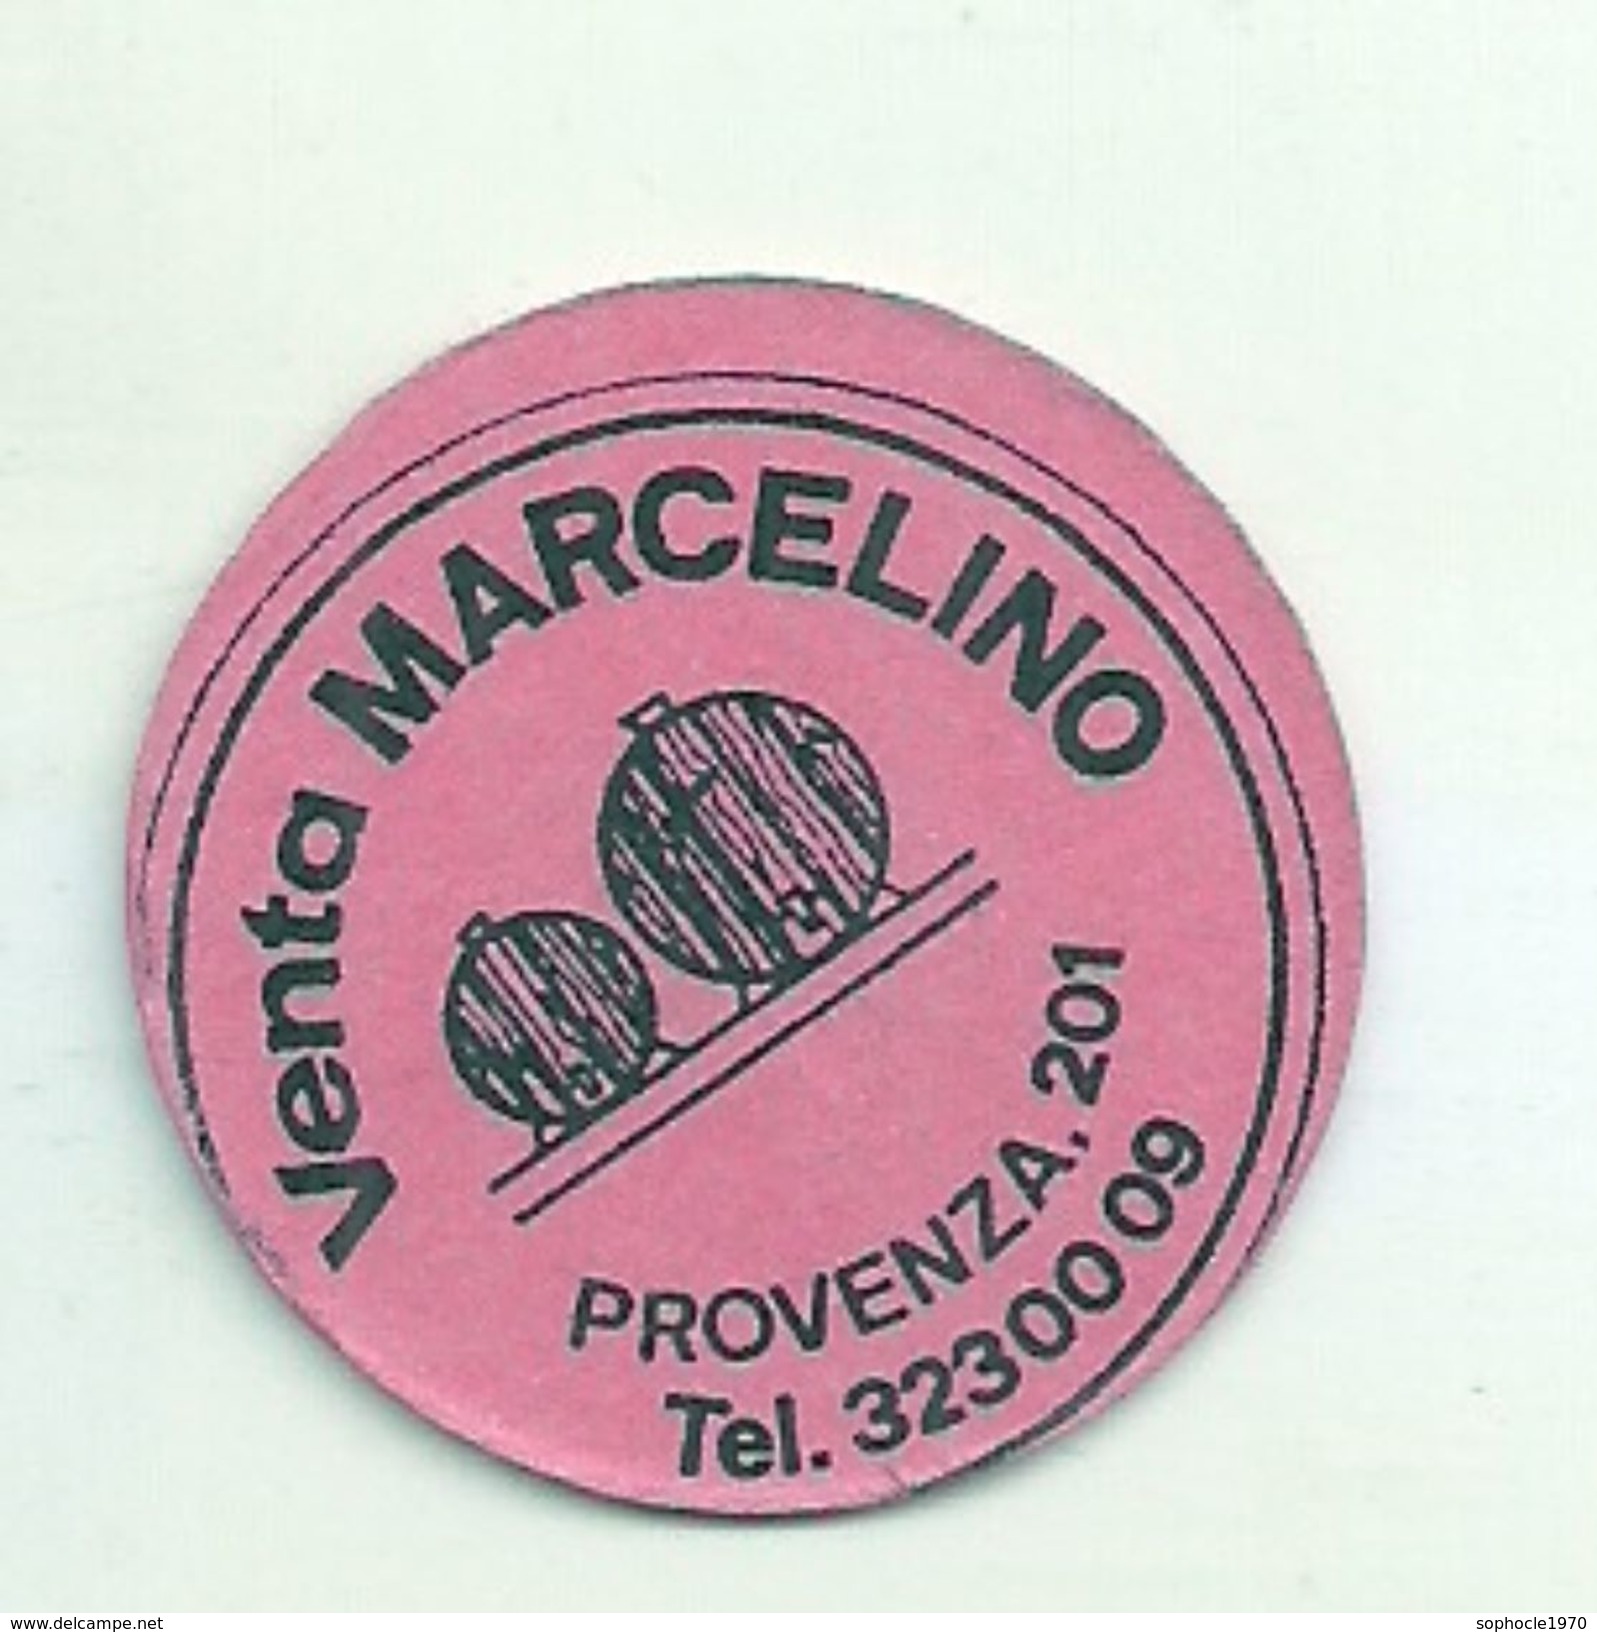 ESPAGNE - 1977 - Monnaie De Carton FRACCIONARIO Venta Marcelino Provenza 201 -  Noodgeld